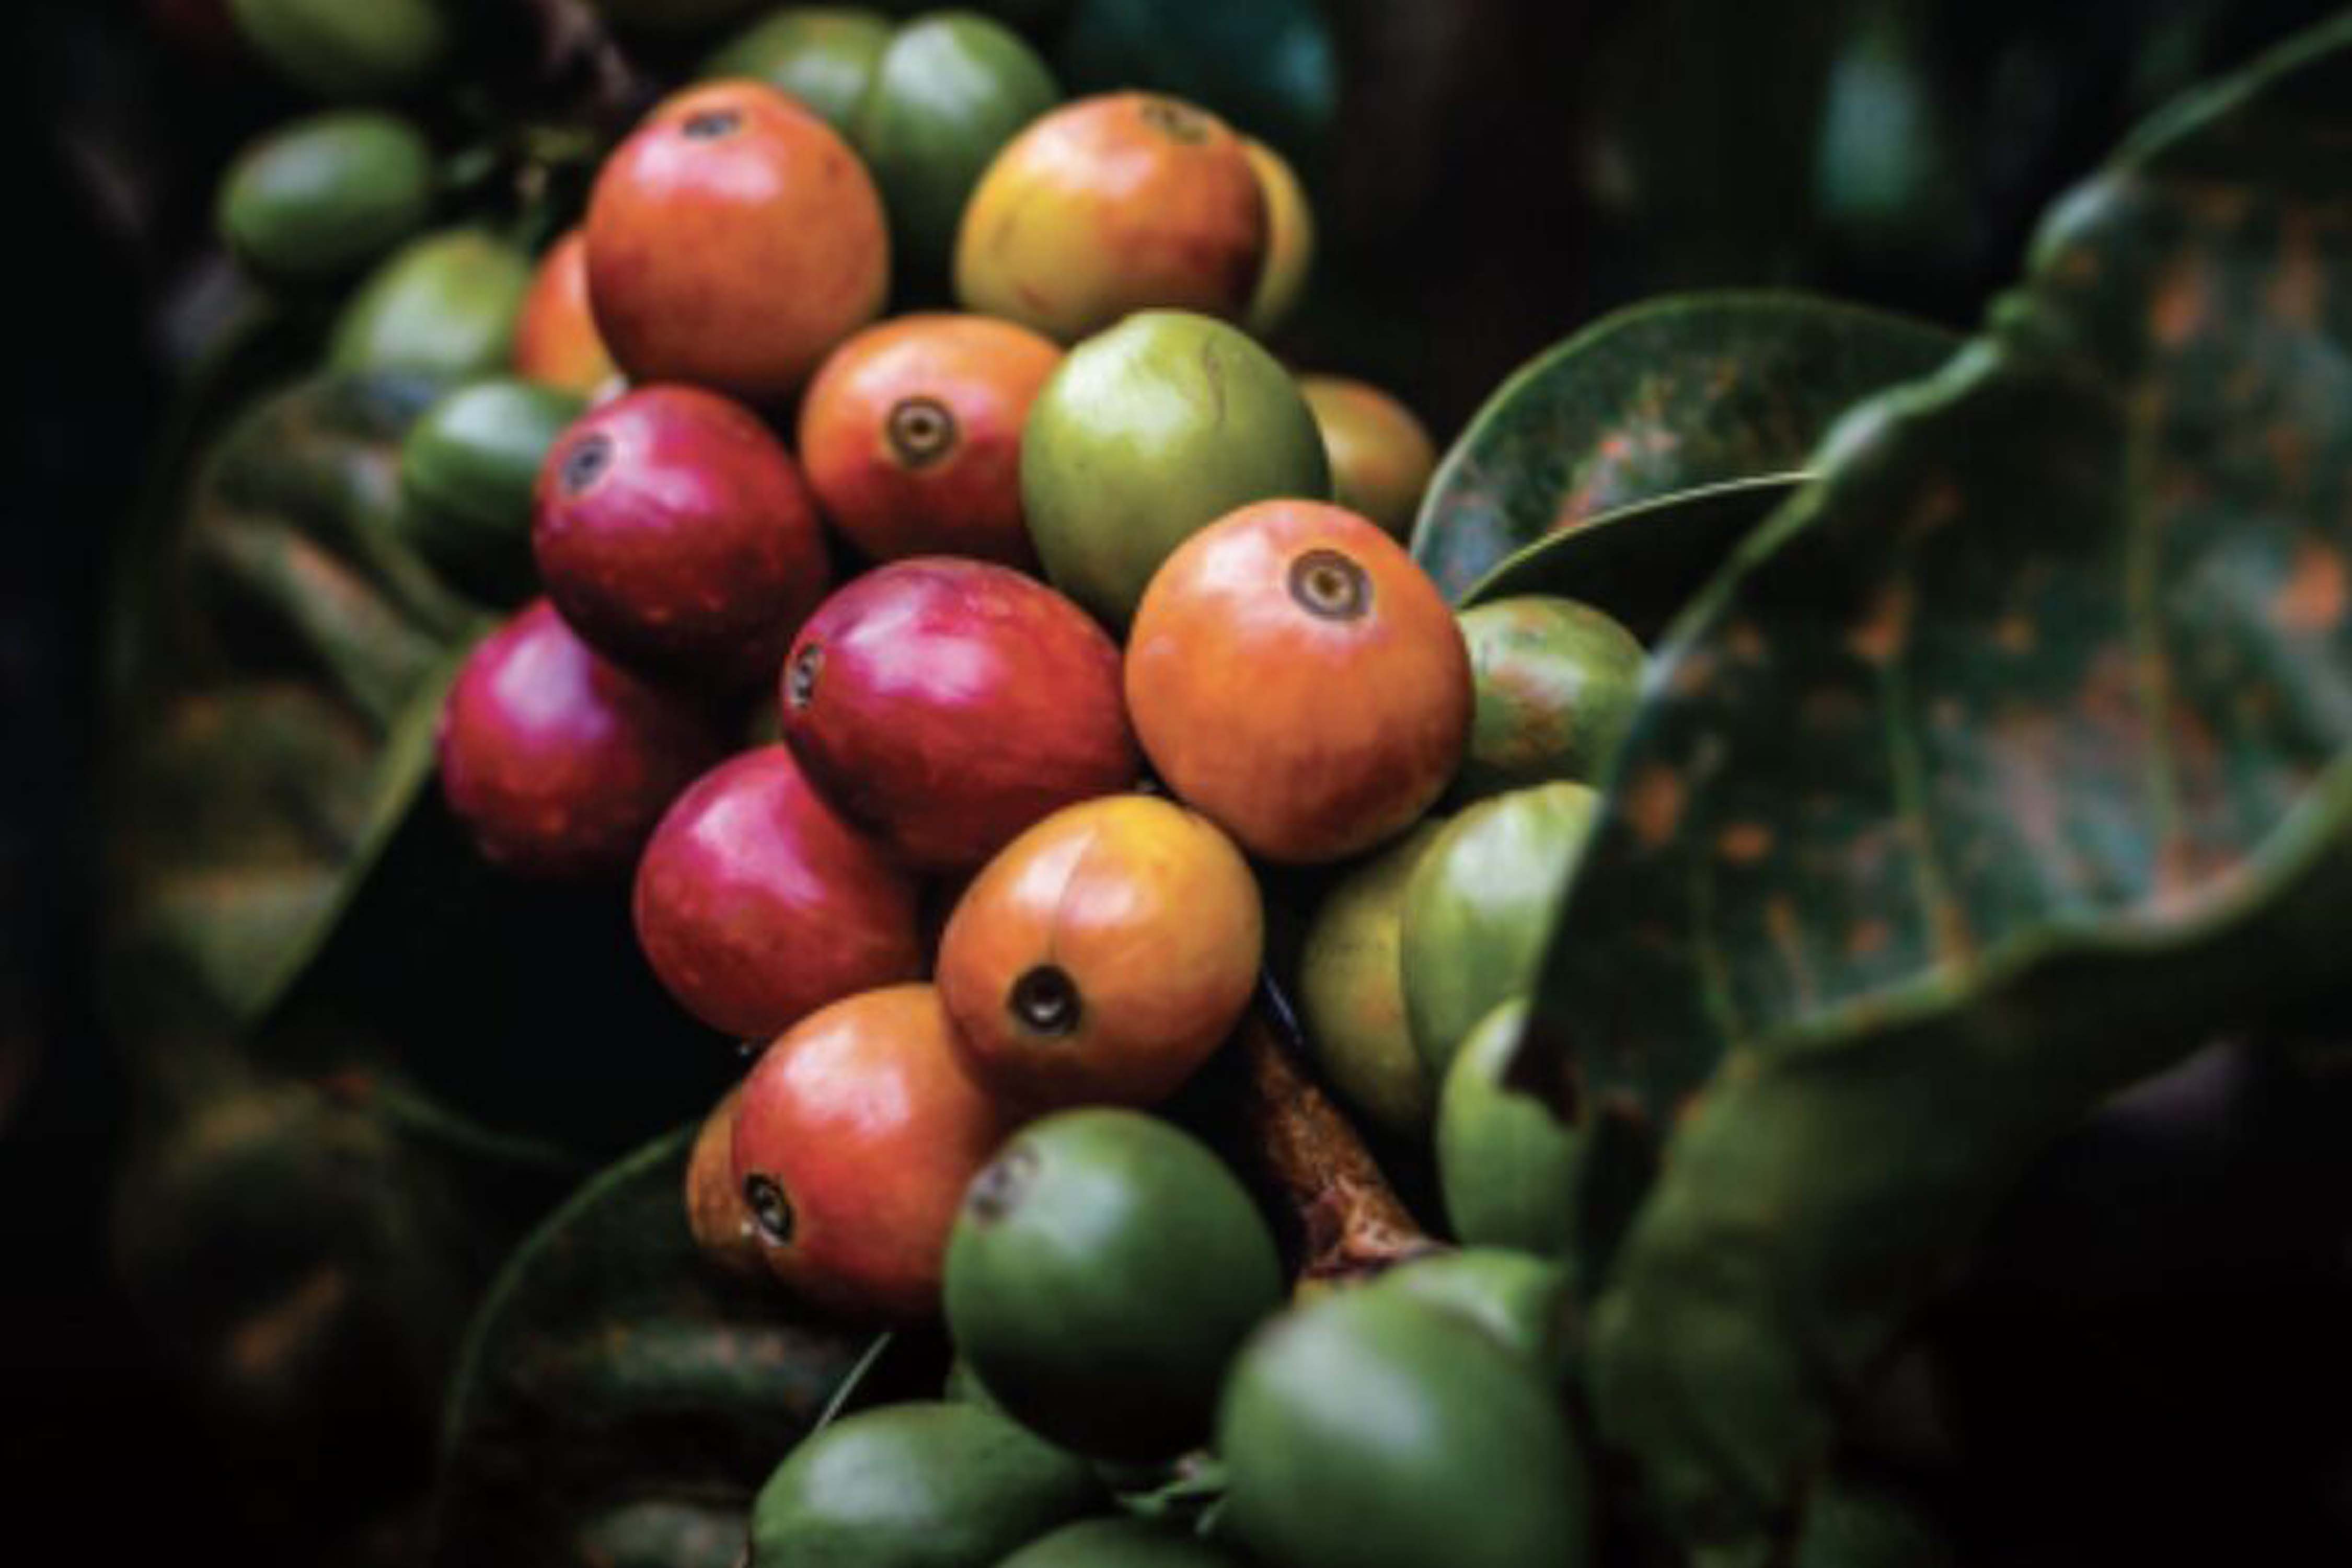 Descifran el genoma del café Arábica y revelan el origen de la especie y de su cultivo